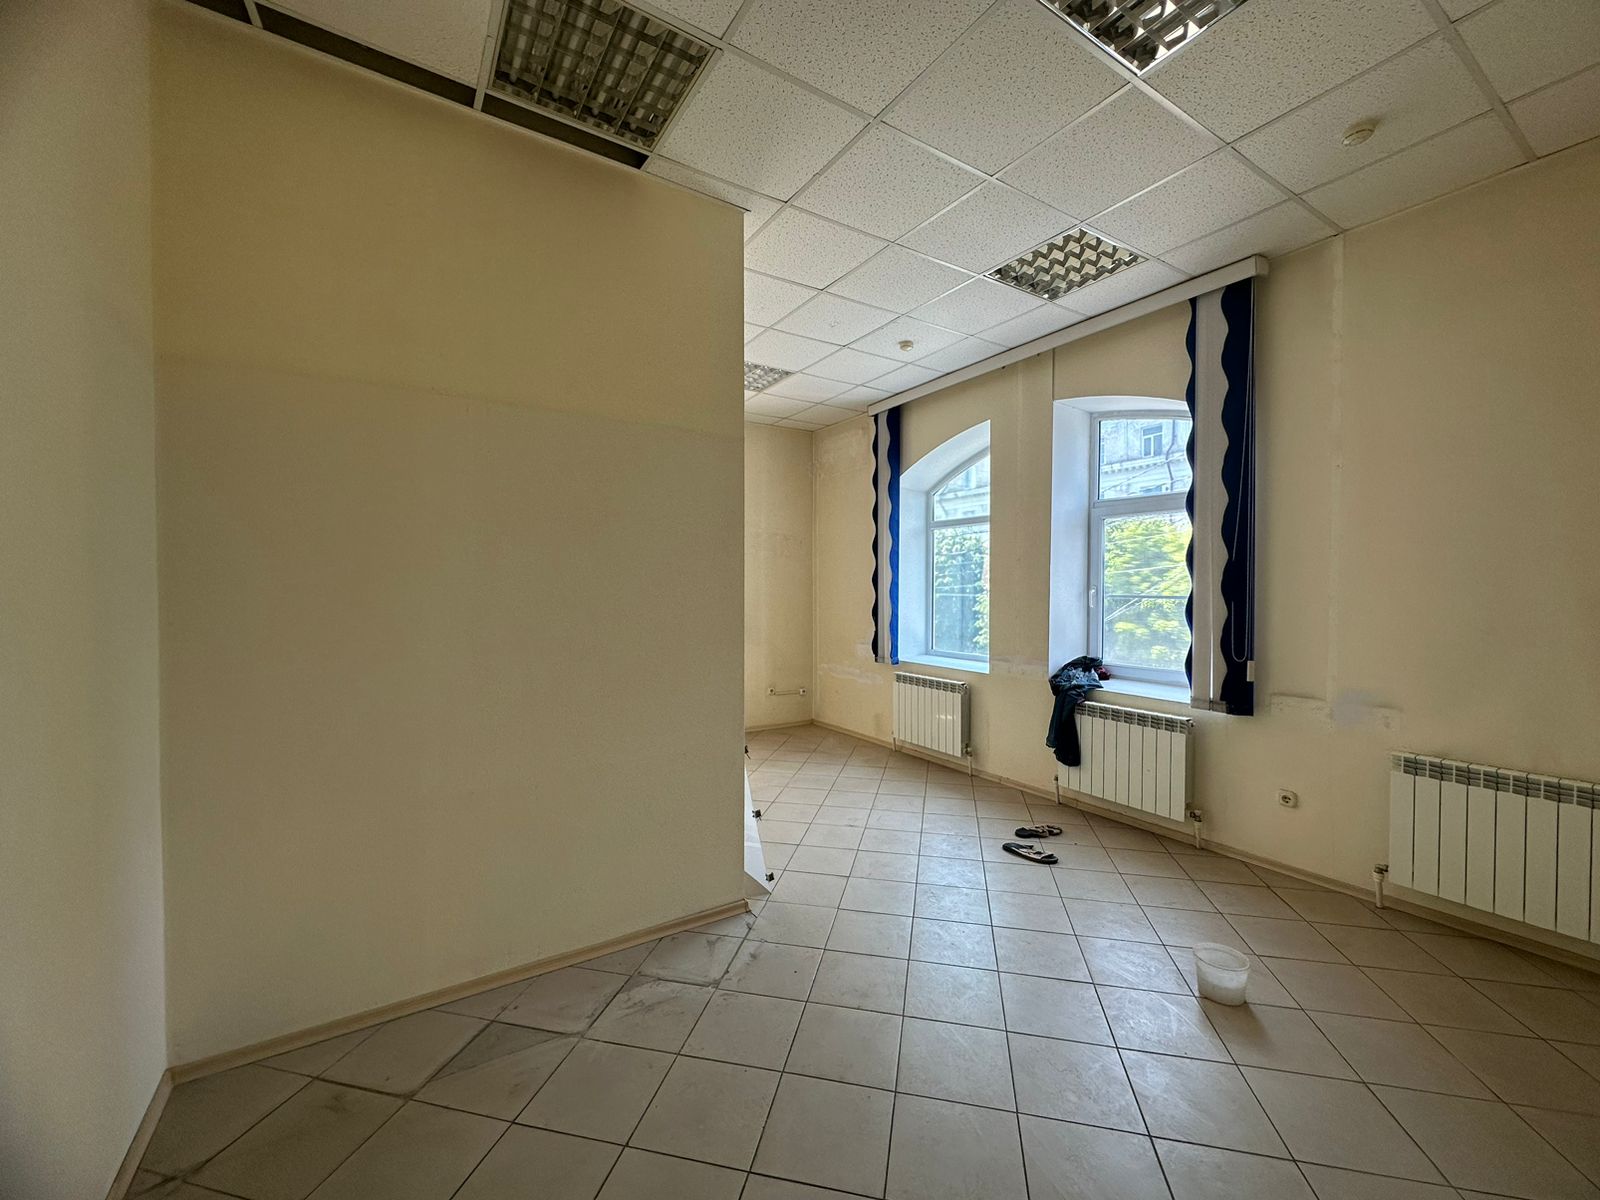 Предлагаем к аренде офисы на 2ом этаже по ул. Карла Маркса д.53, площадью 40 м², напрямую от собственника._6